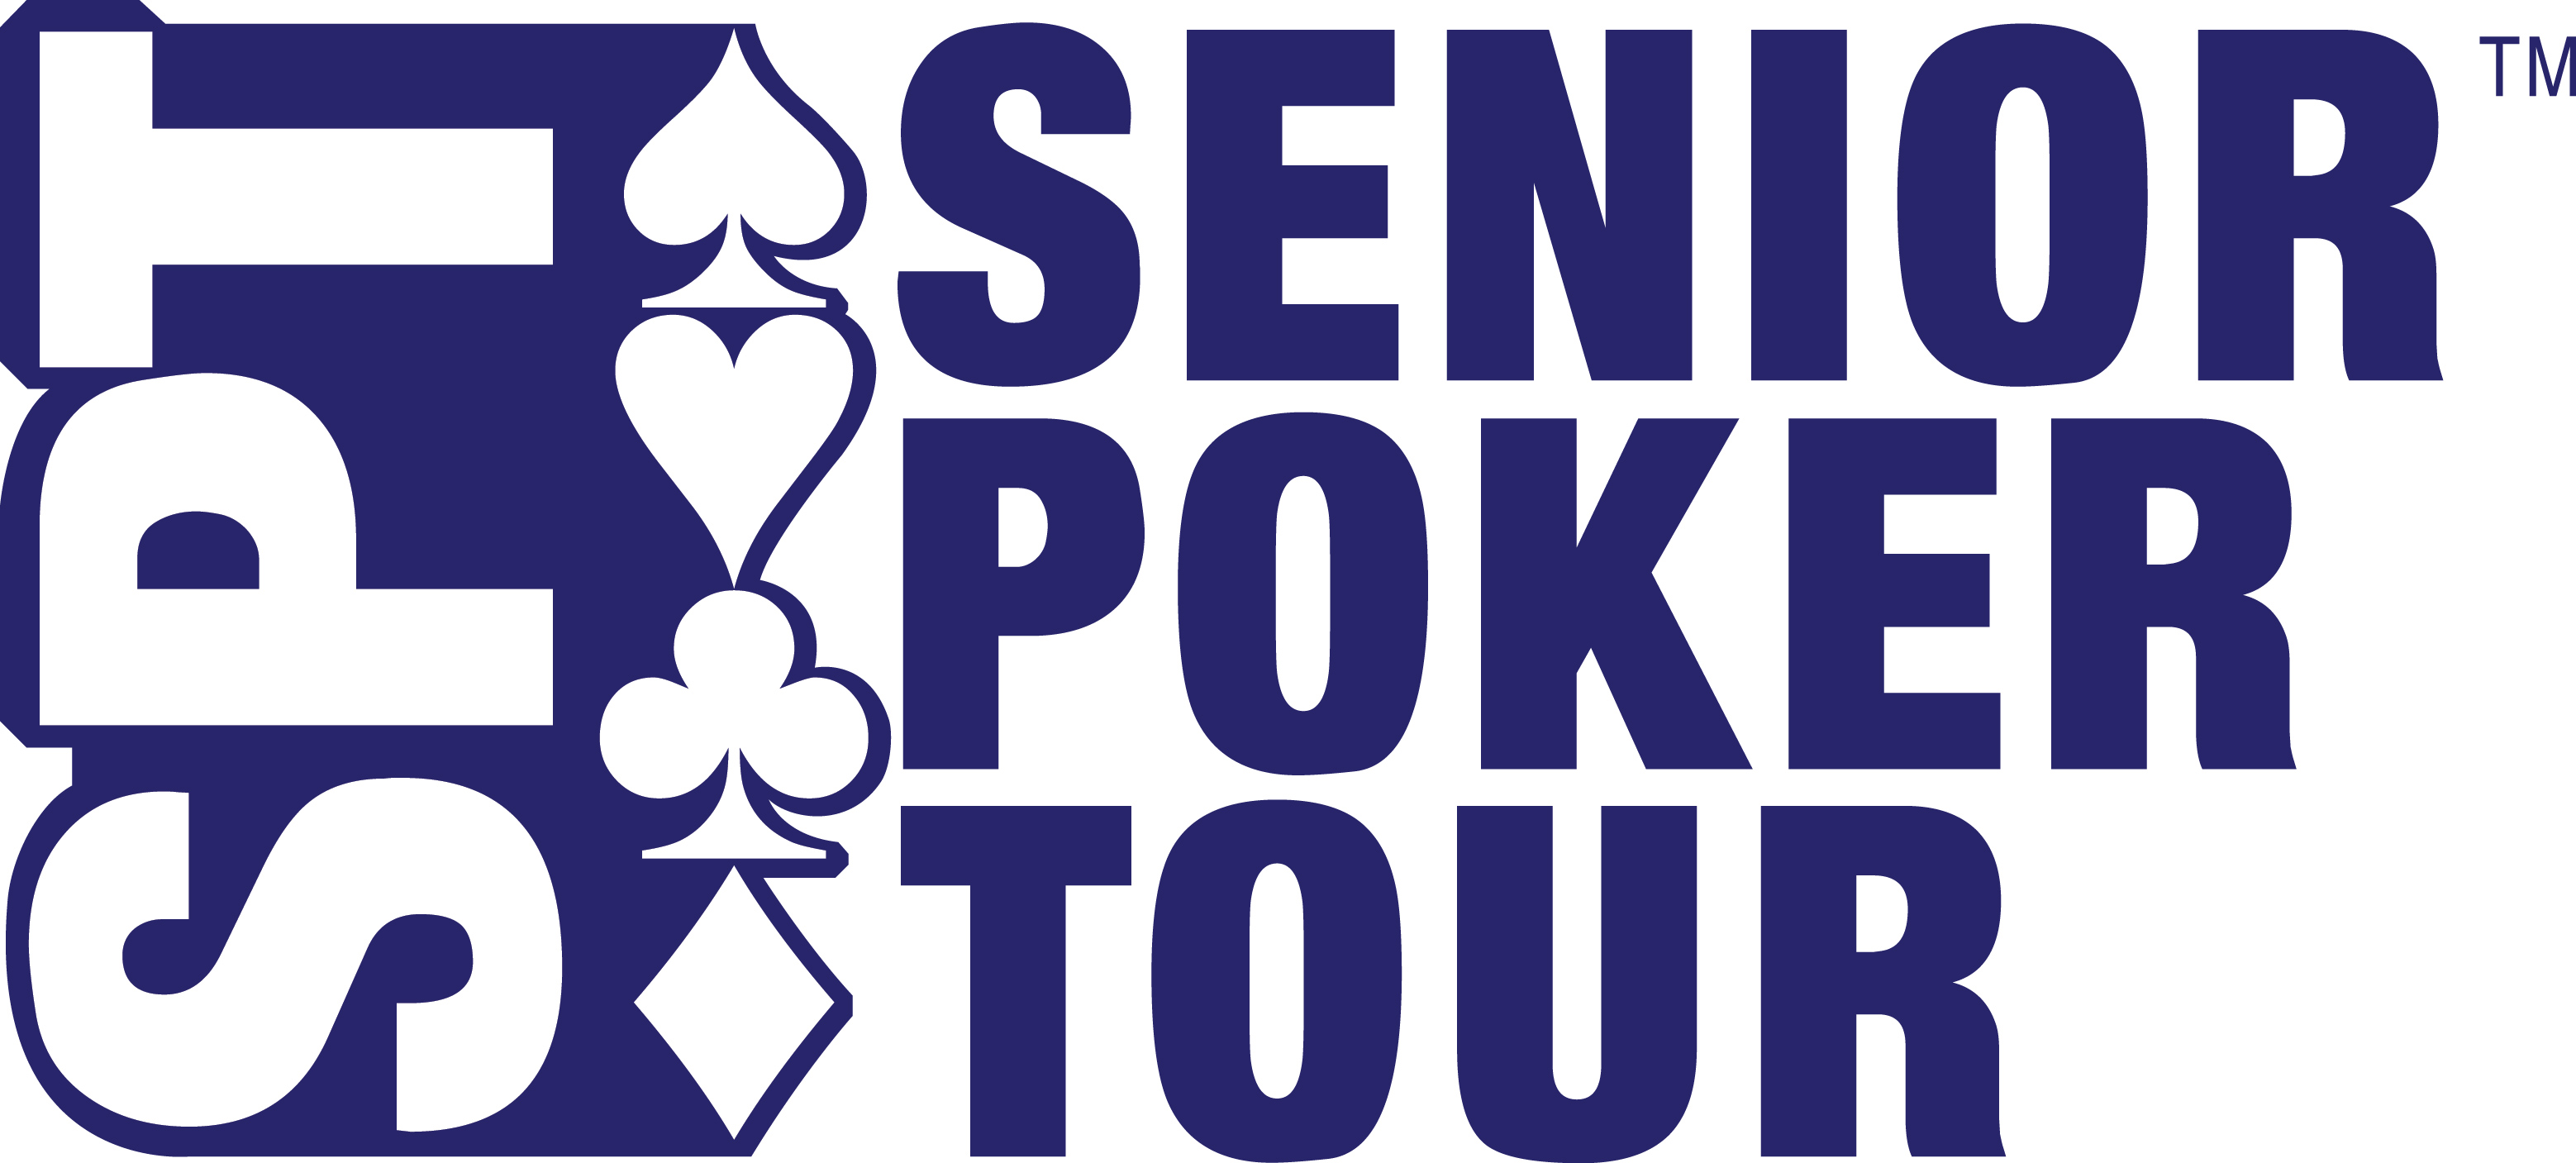 Senior Poker Tour